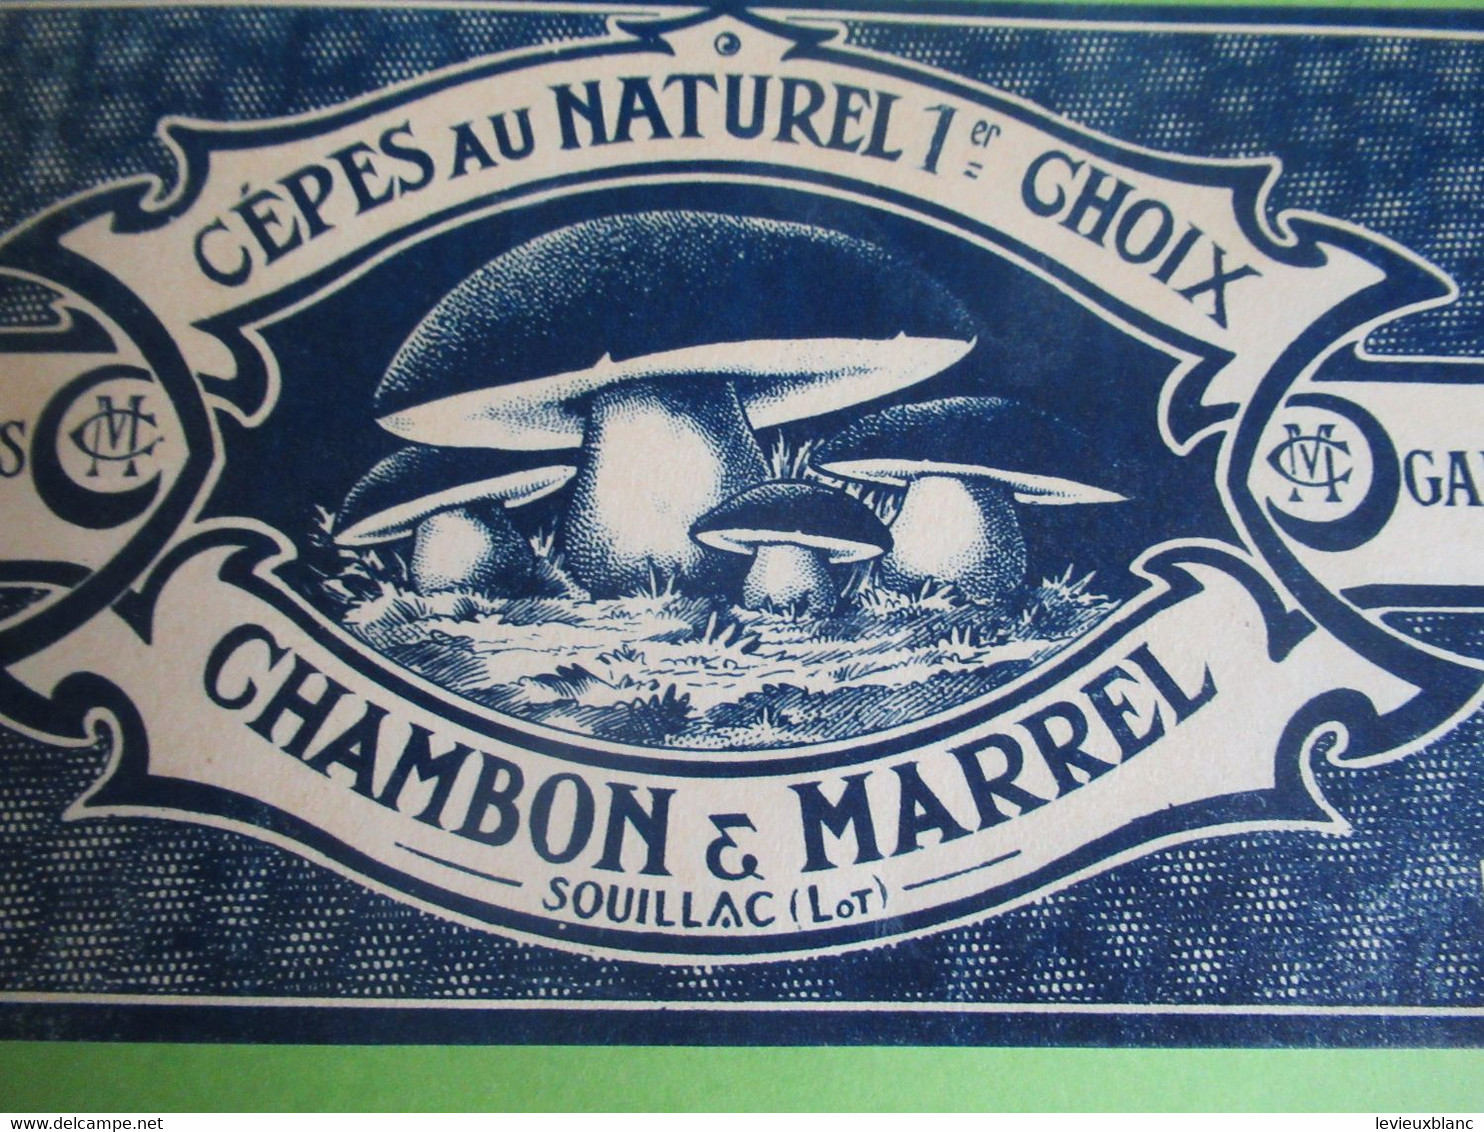 Etiquette Conserve/Cèpes Au Naturel 1er Choix/CHAMBON & MARREL/SOUILLAC ( Lot ) / Début XX                  ETIQ182 - Obst Und Gemüse